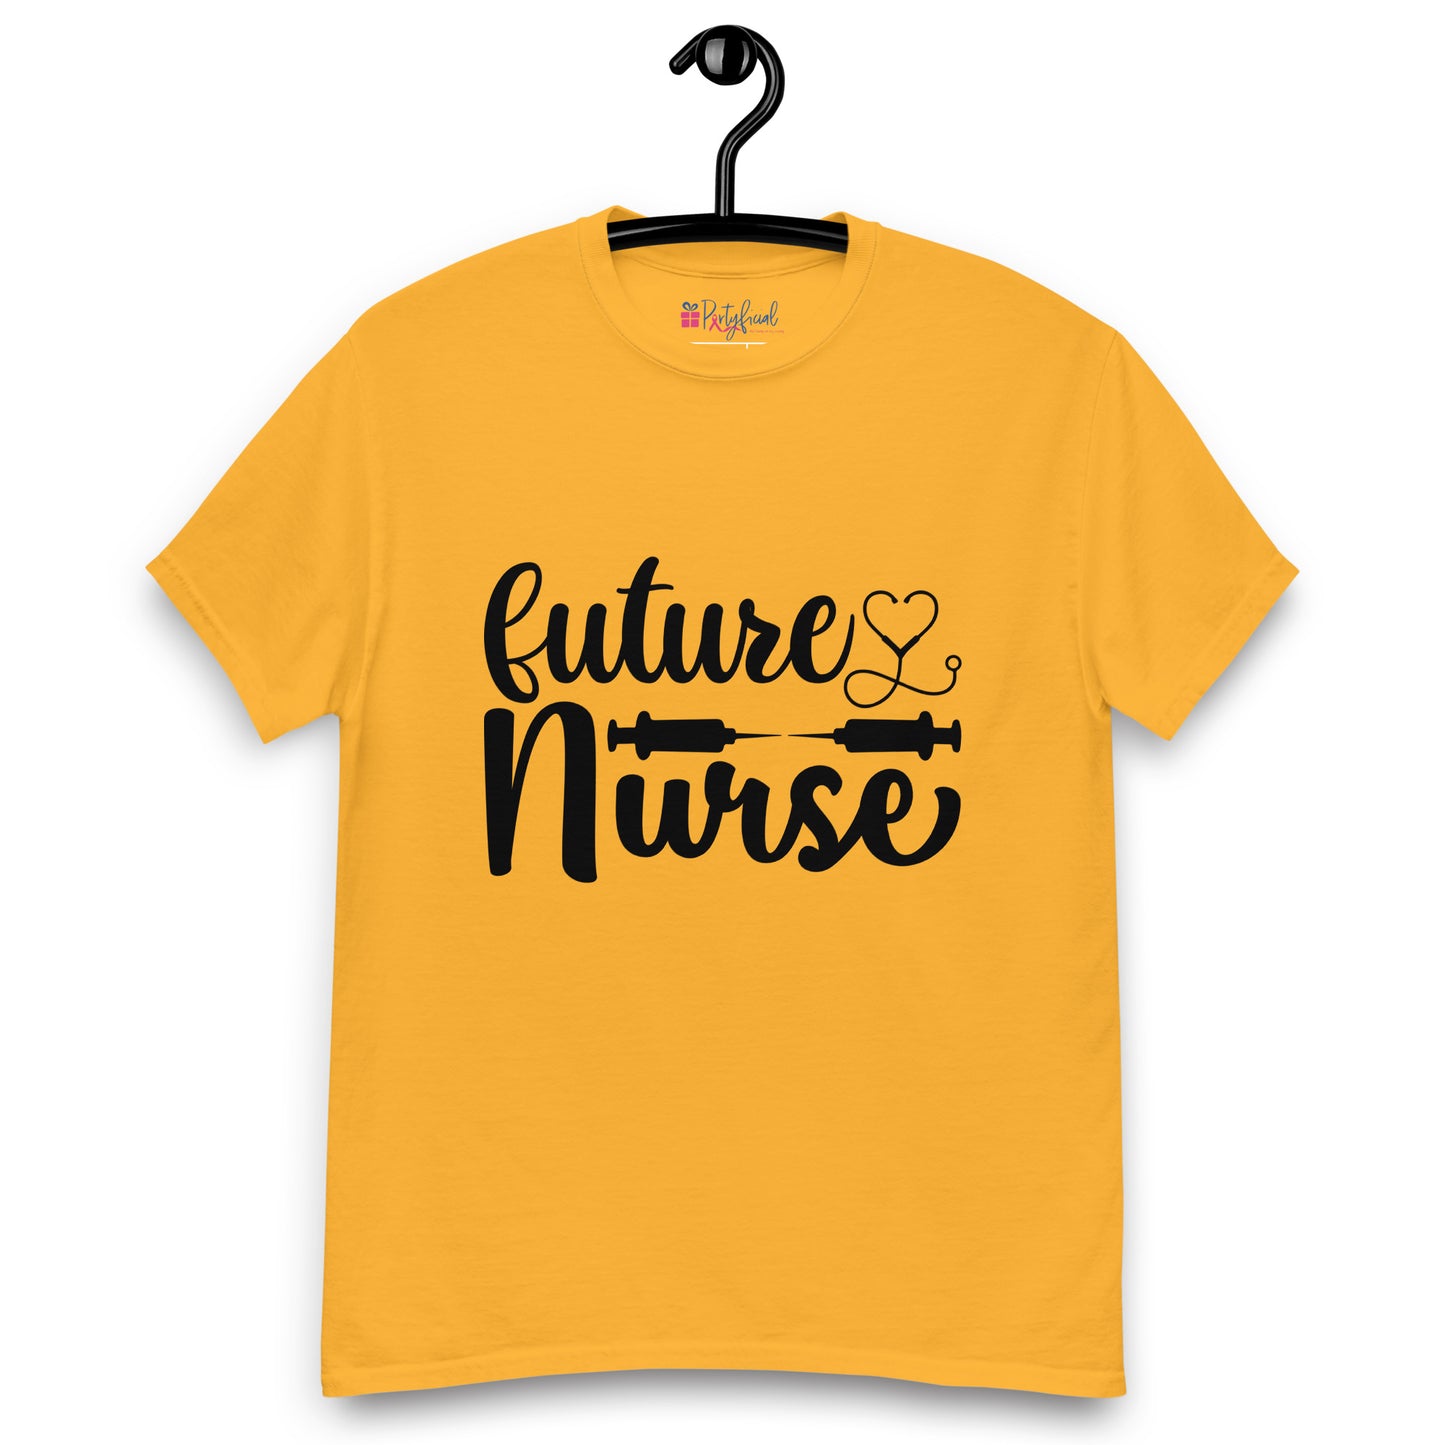 Future Nurse tee